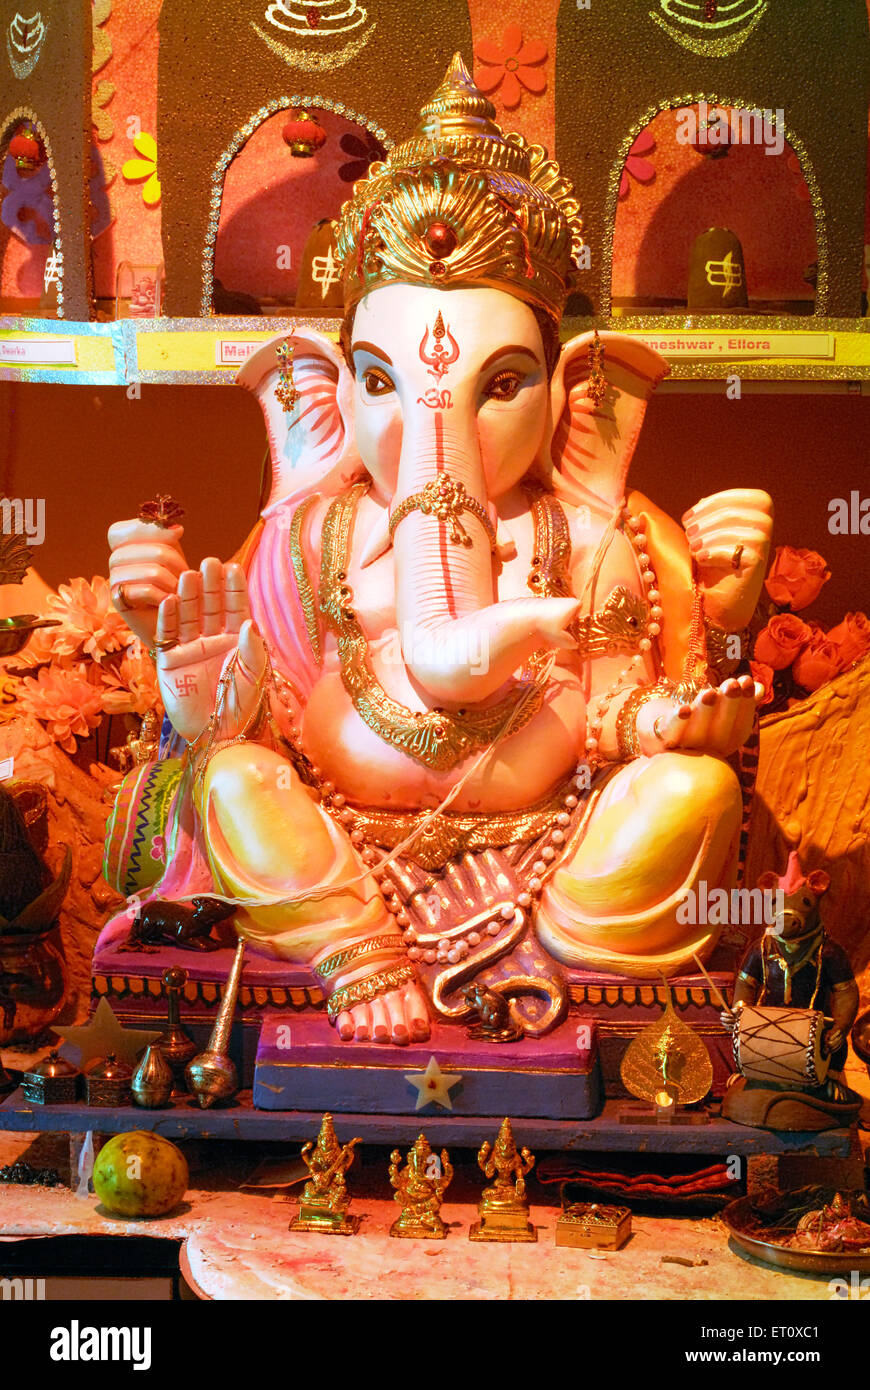 Richly decorated two idols of lord Ganesh elephant headed God ; Ganapati festival year 2008 at Pune ; Maharashtra ; India Stock Photo